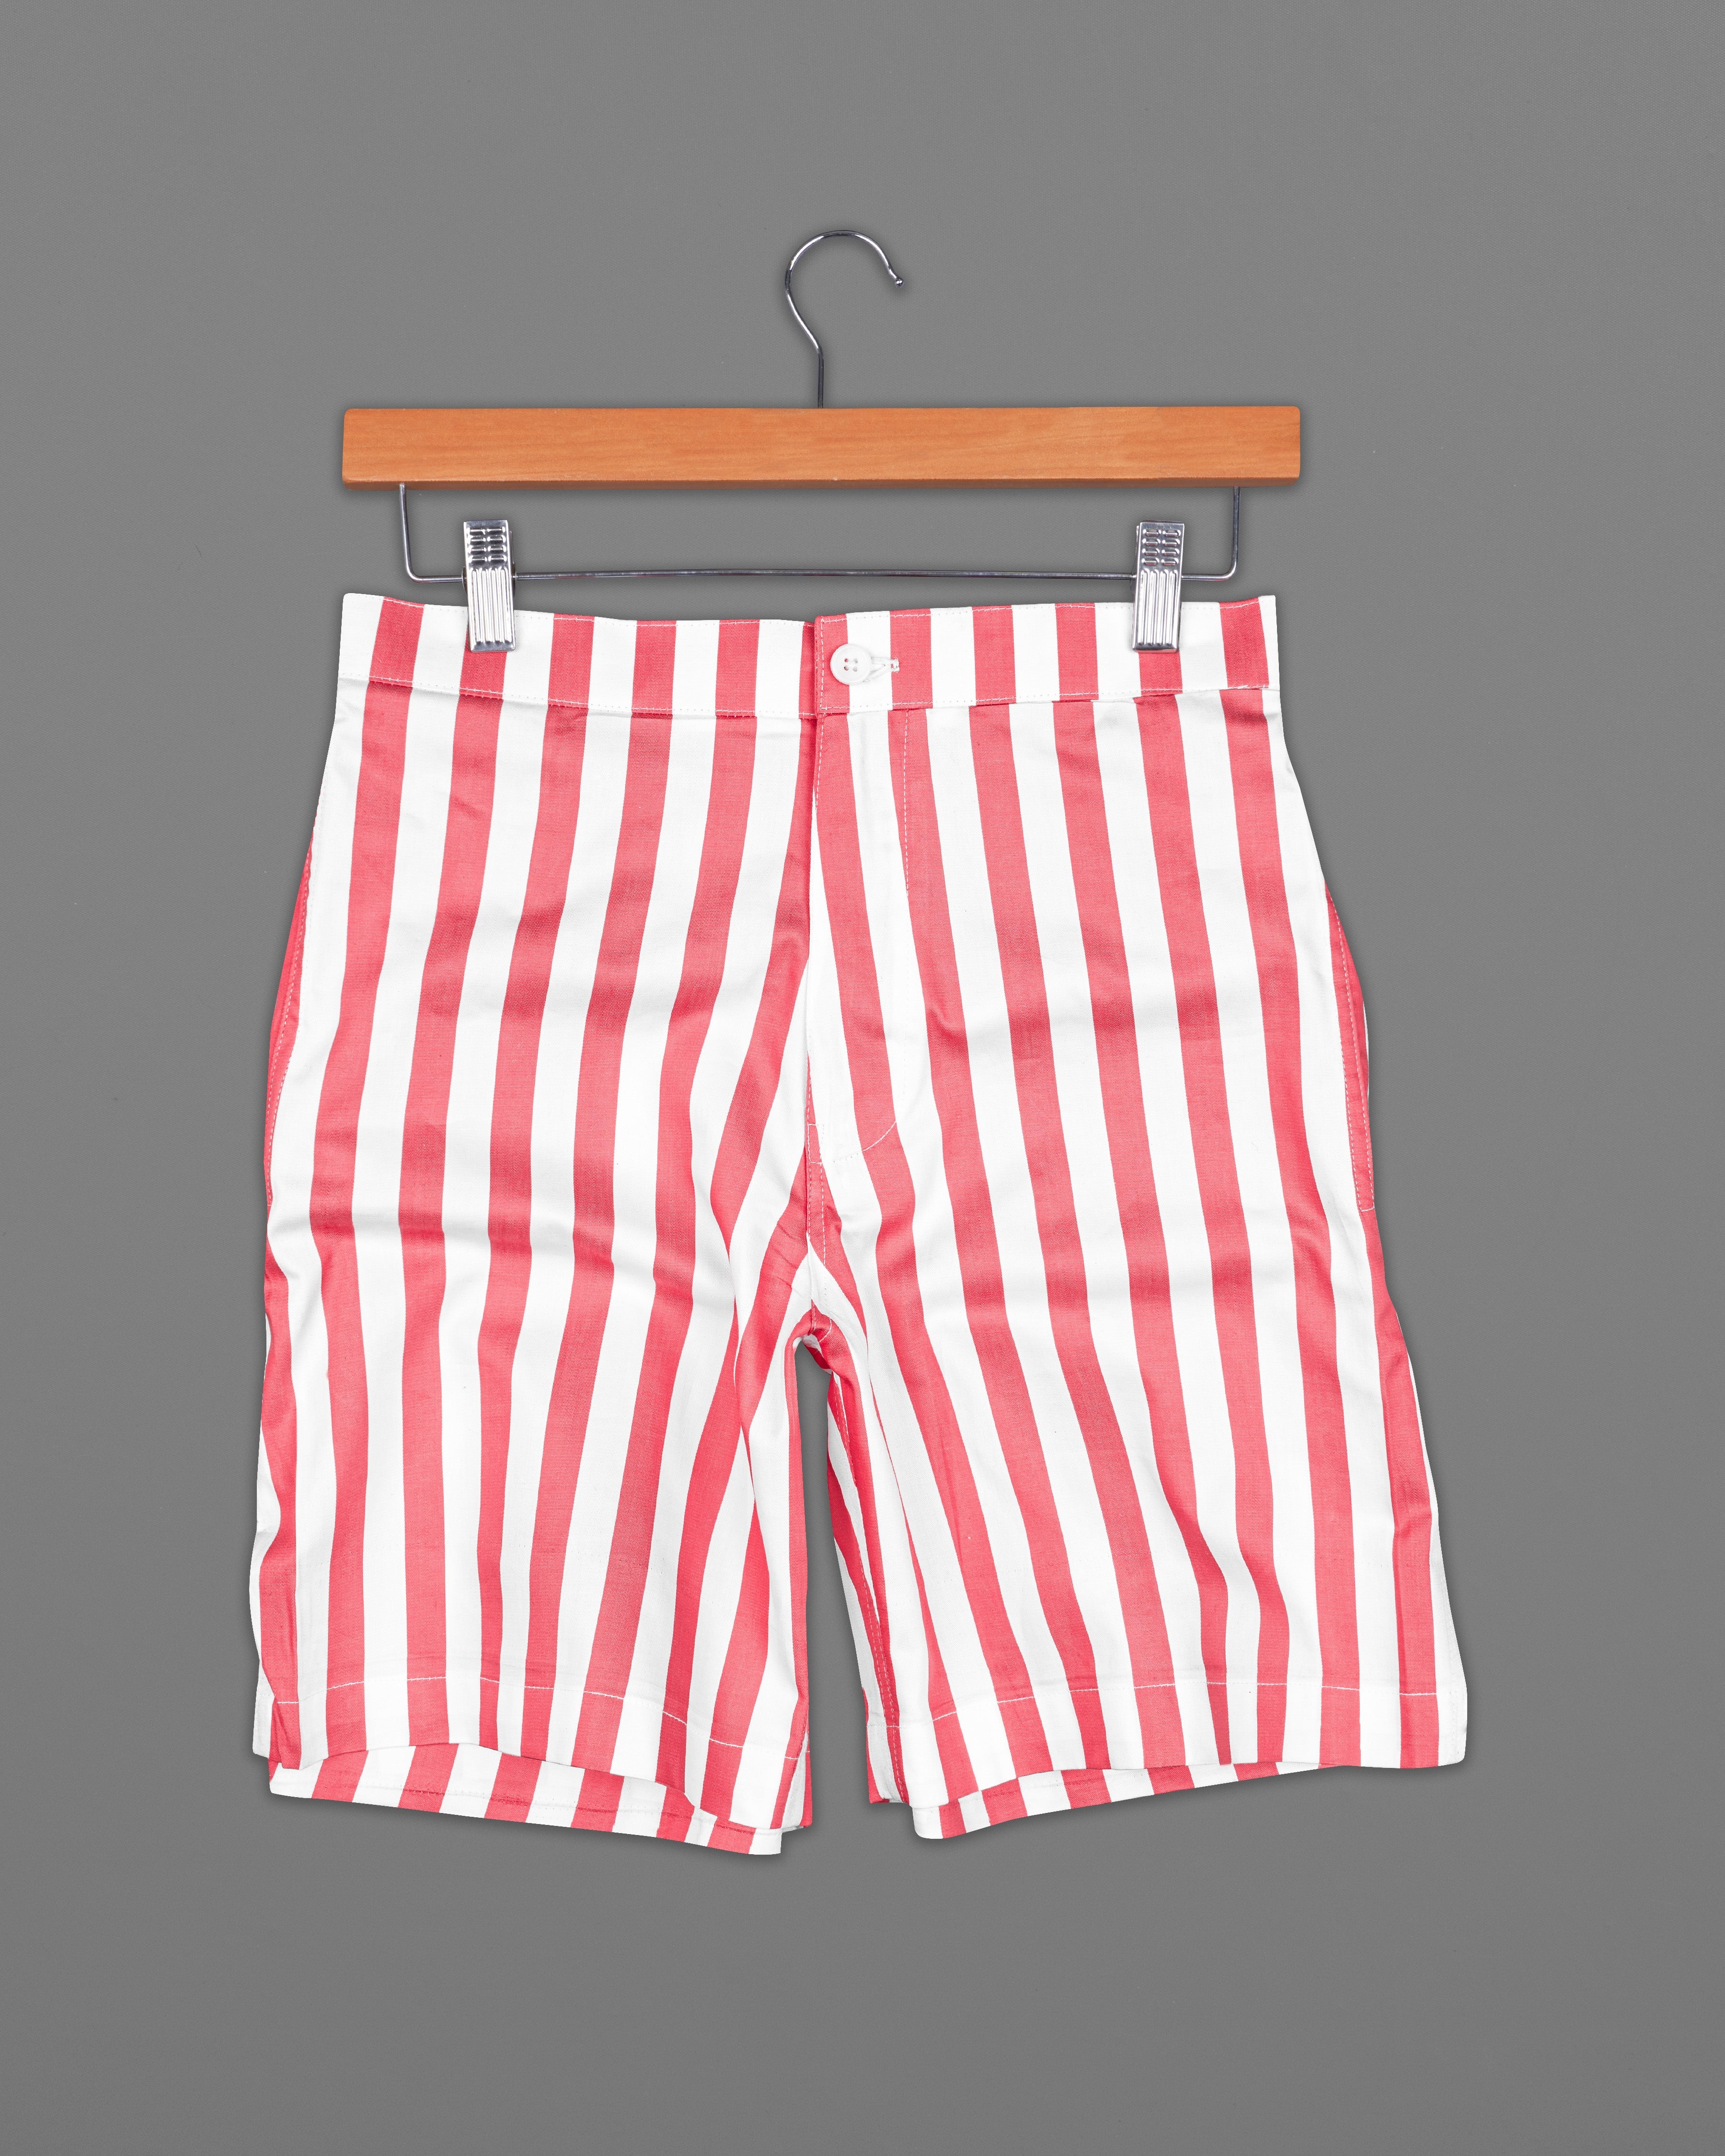 Geraldine Pink and White Striped Twill Premium Cotton Shorts SR211-28, SR211-30, SR211-32, SR211-34, SR211-36, SR211-38, SR211-40, SR211-42, SR211-44